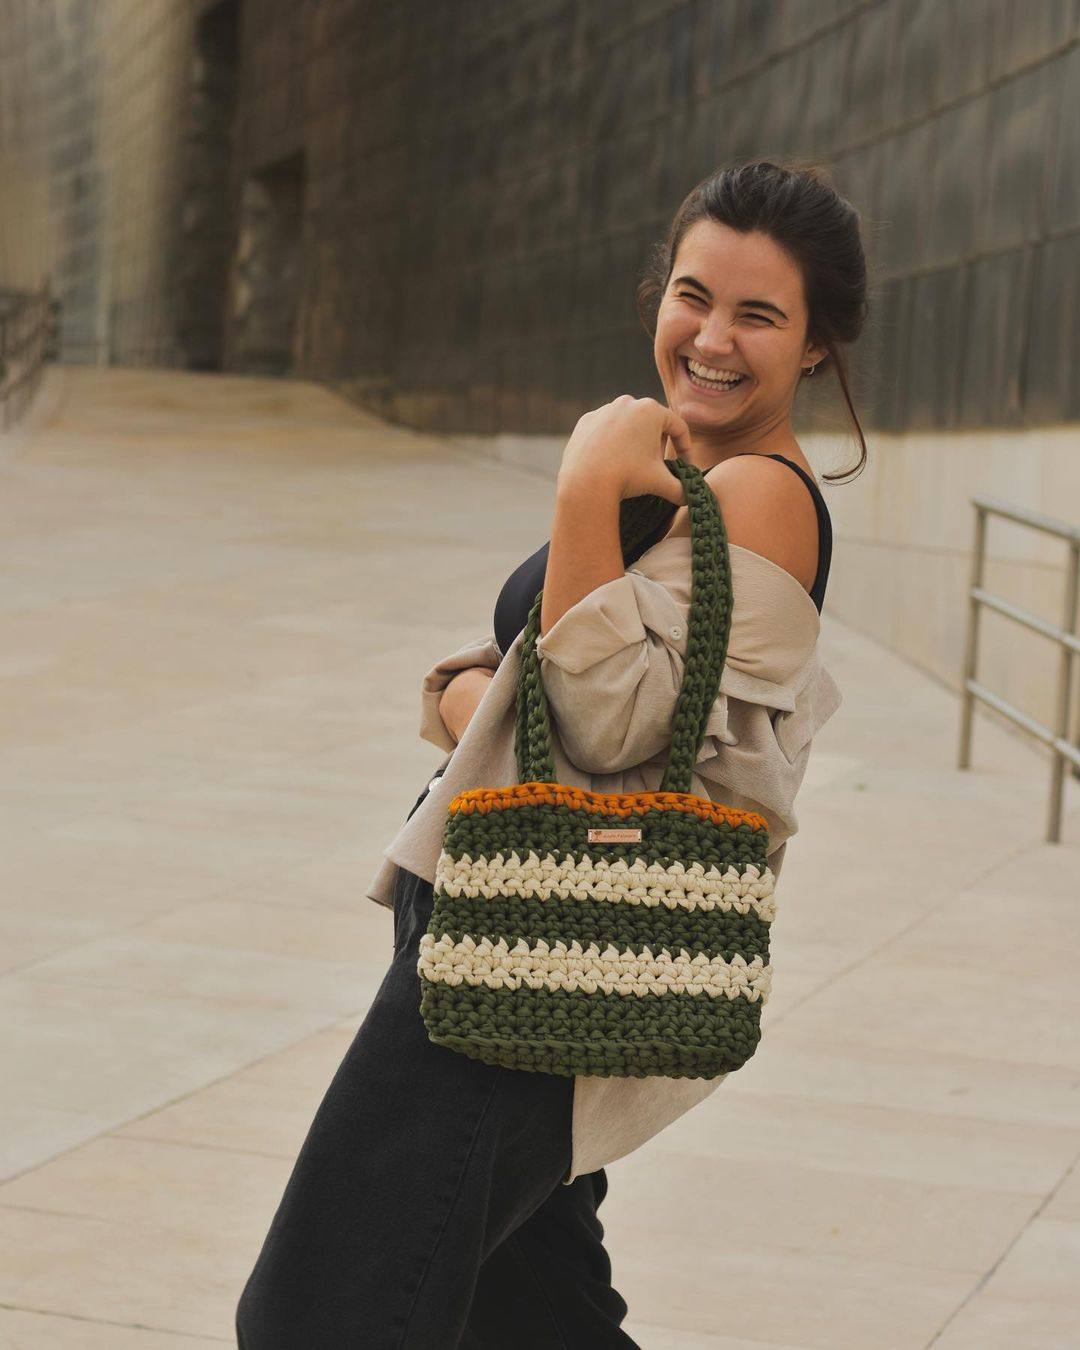 Fotos: Los bolsos más bonitos de temporada de crochet y están tejidos a mano en Vitoria | El